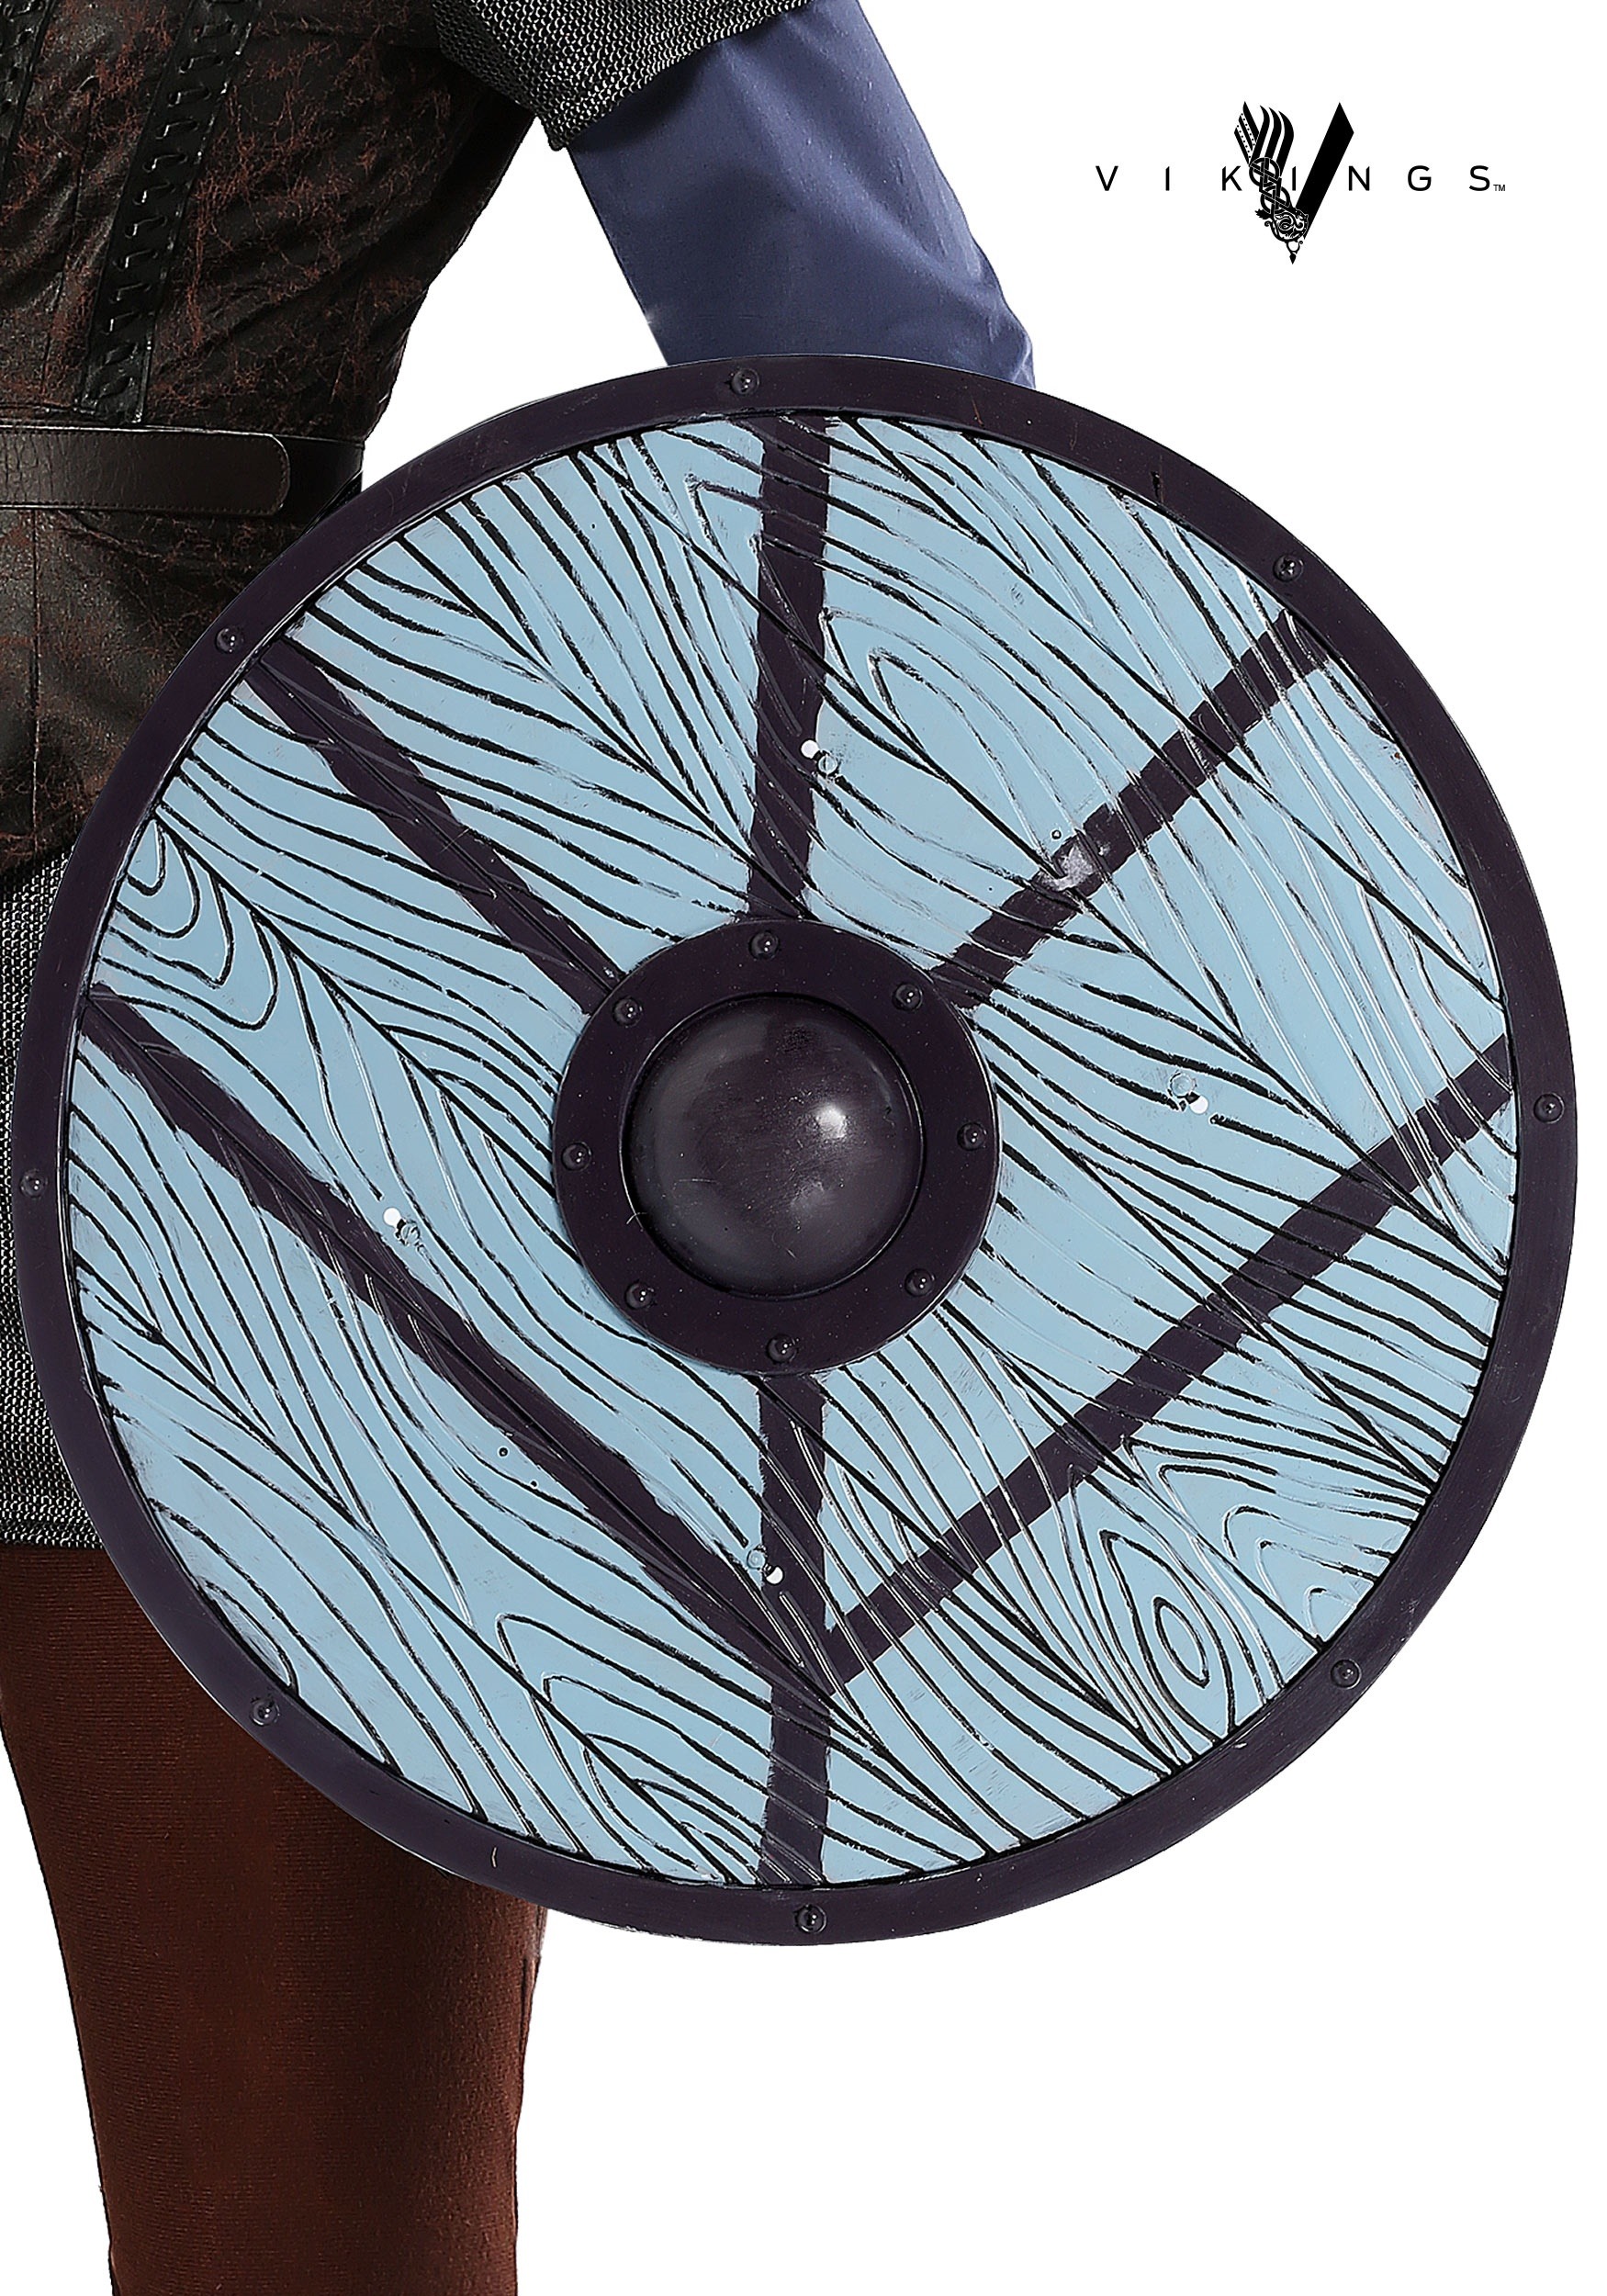 Vikings Lagertha Lothbrok Shield Prop